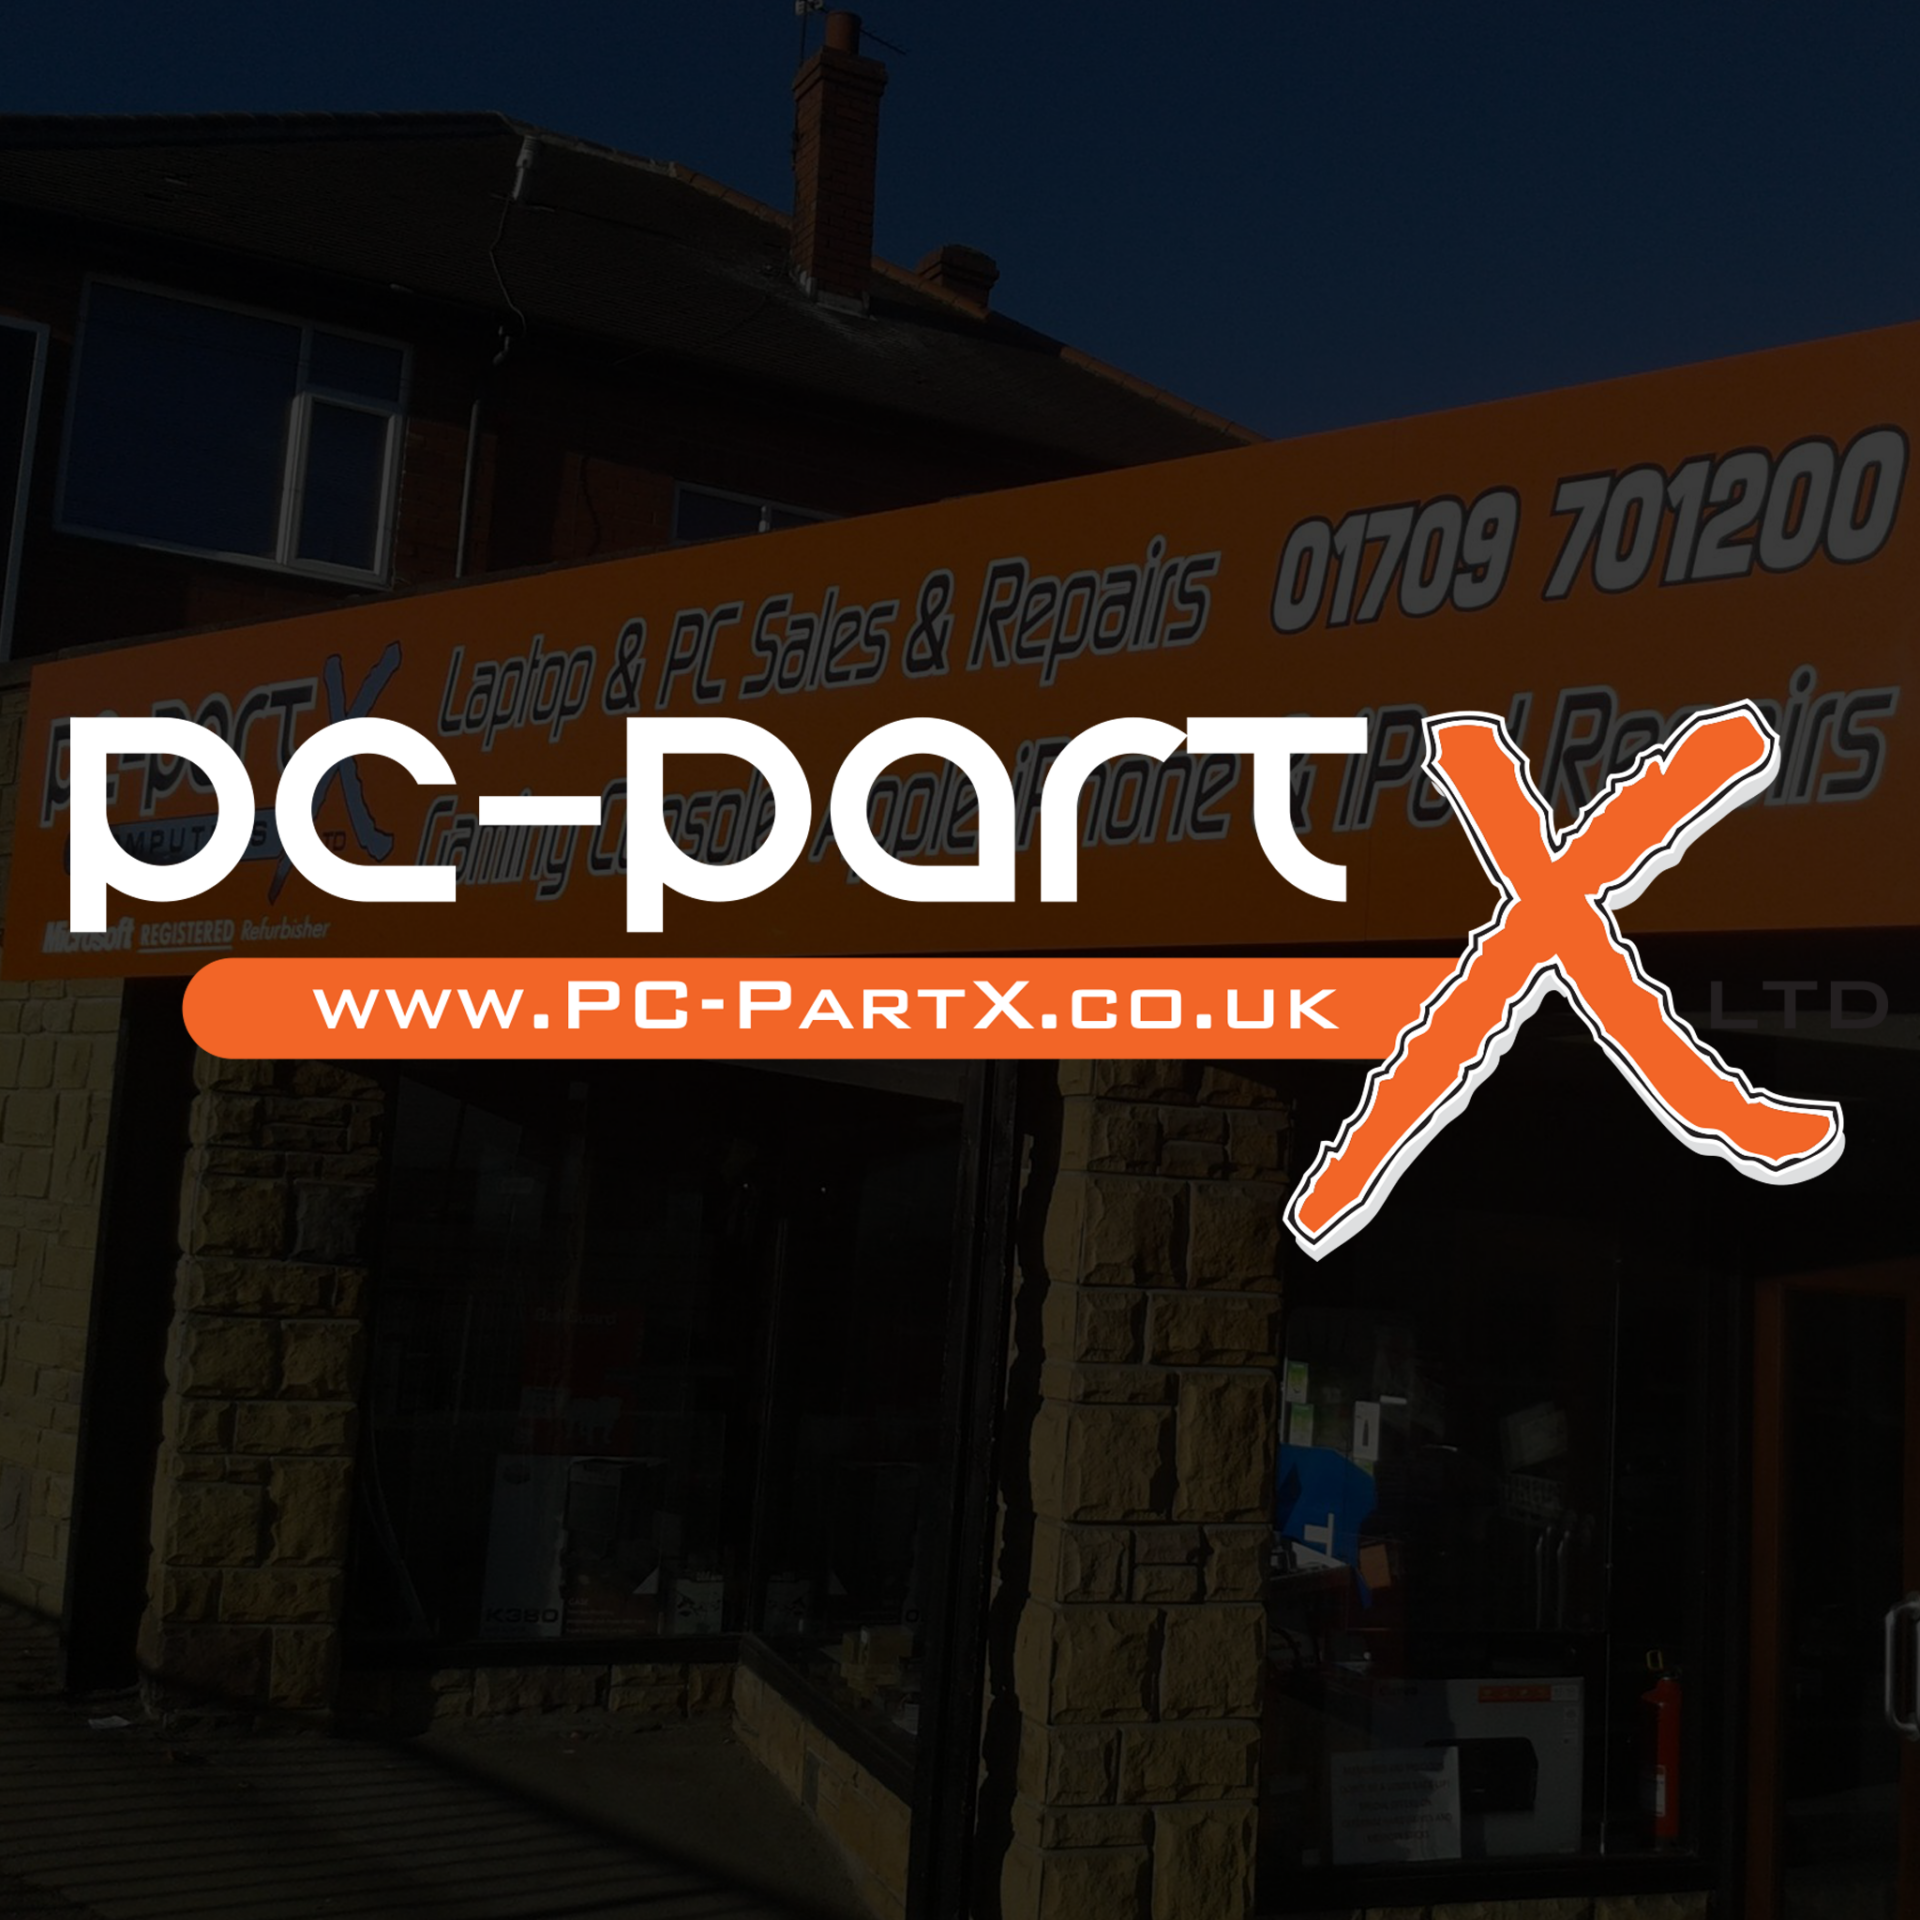 PC-Part X Ltd